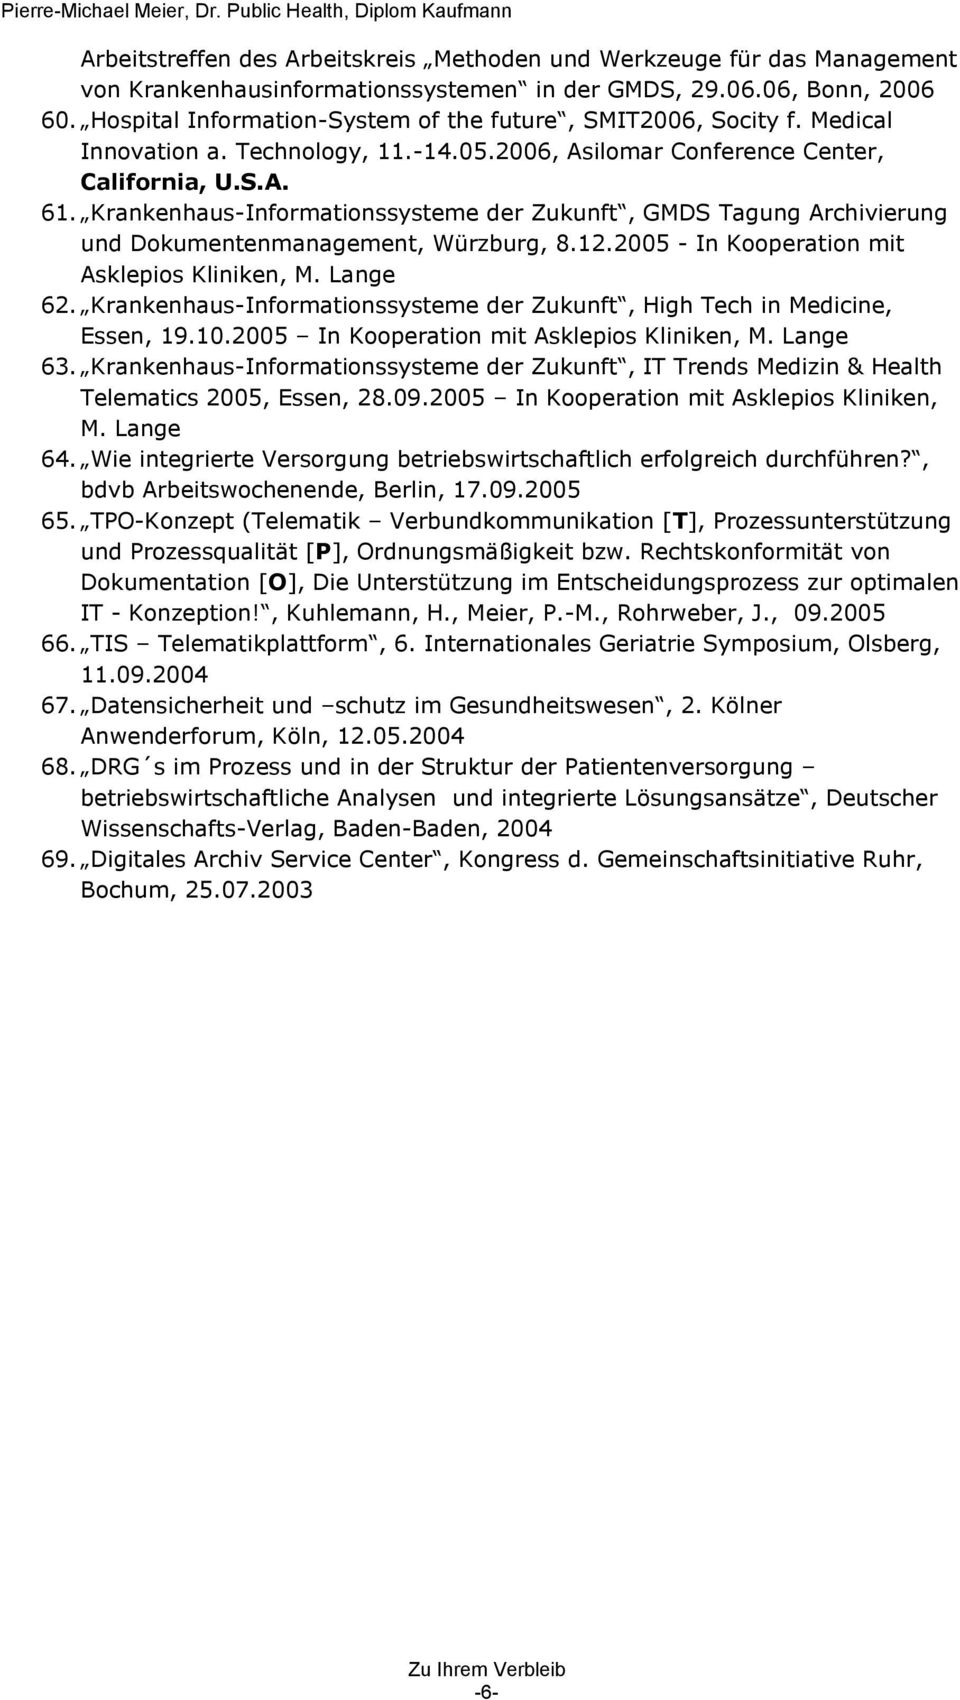 Krankenhaus-Informationssysteme der Zukunft, GMDS Tagung Archivierung und Dokumentenmanagement, Würzburg, 8.12.2005 - In Kooperation mit Asklepios Kliniken, M. Lange 62.